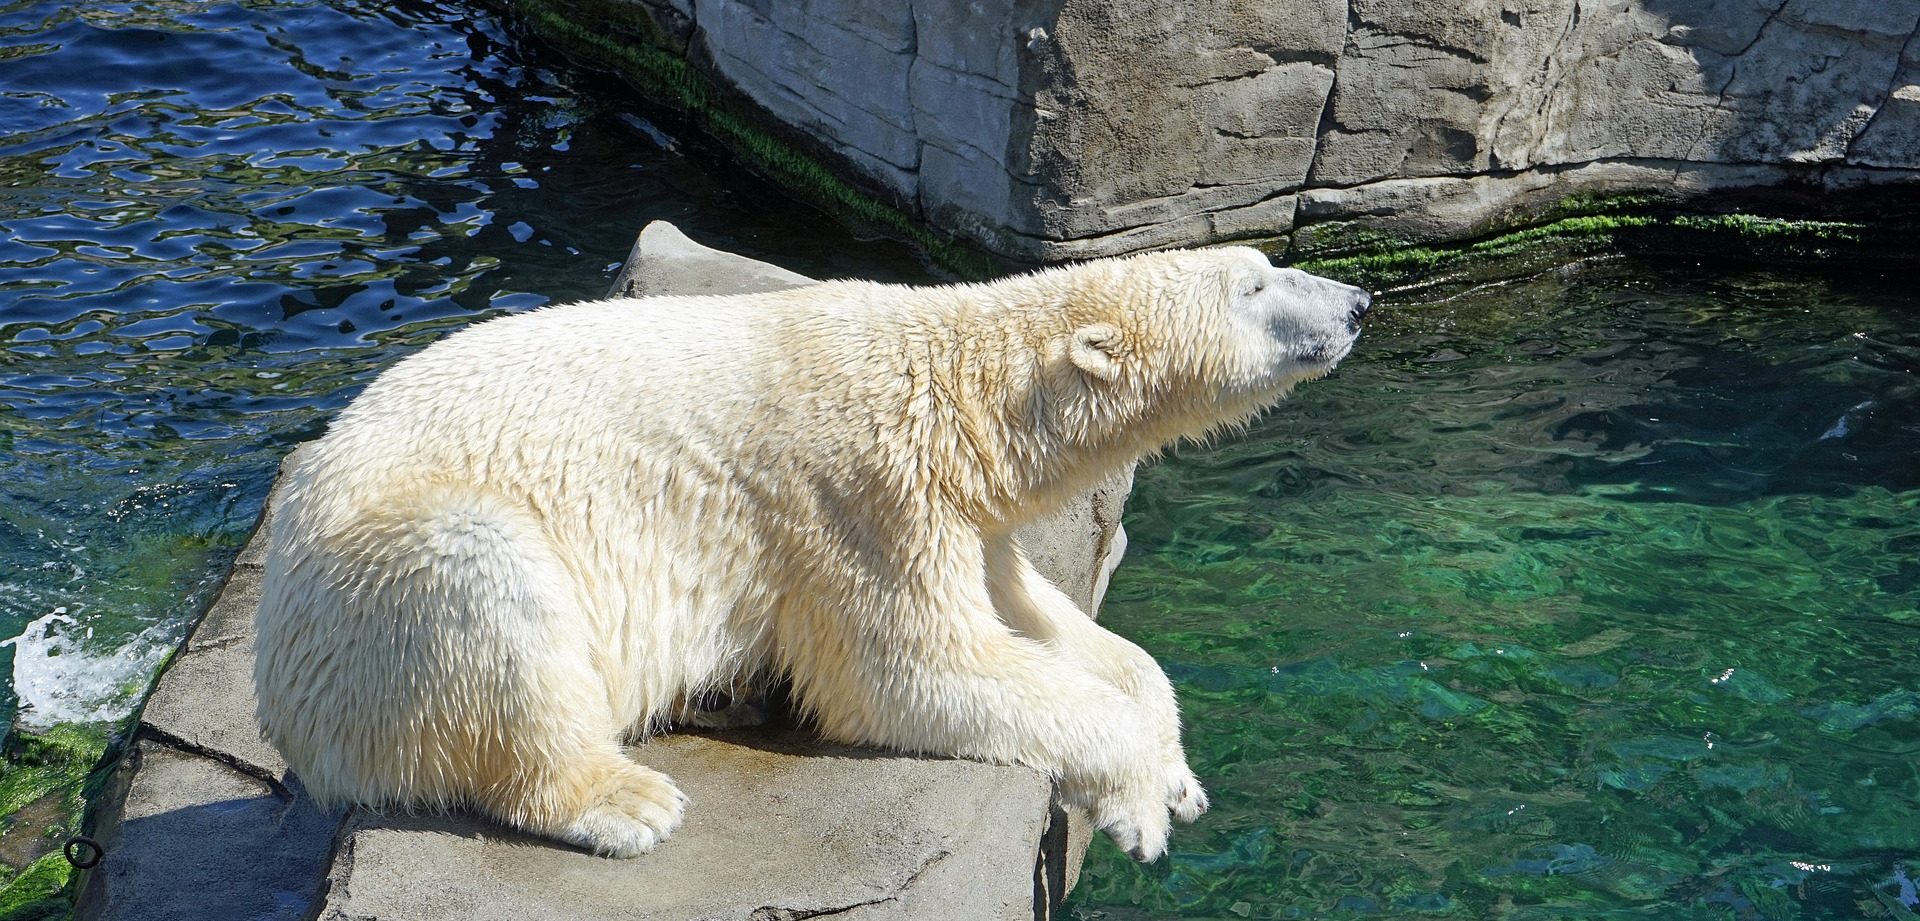 Ради или Хатанга: голосование по выбору имени для белого медведя запустили в Московском зоопарке. Фото: pixabay.com